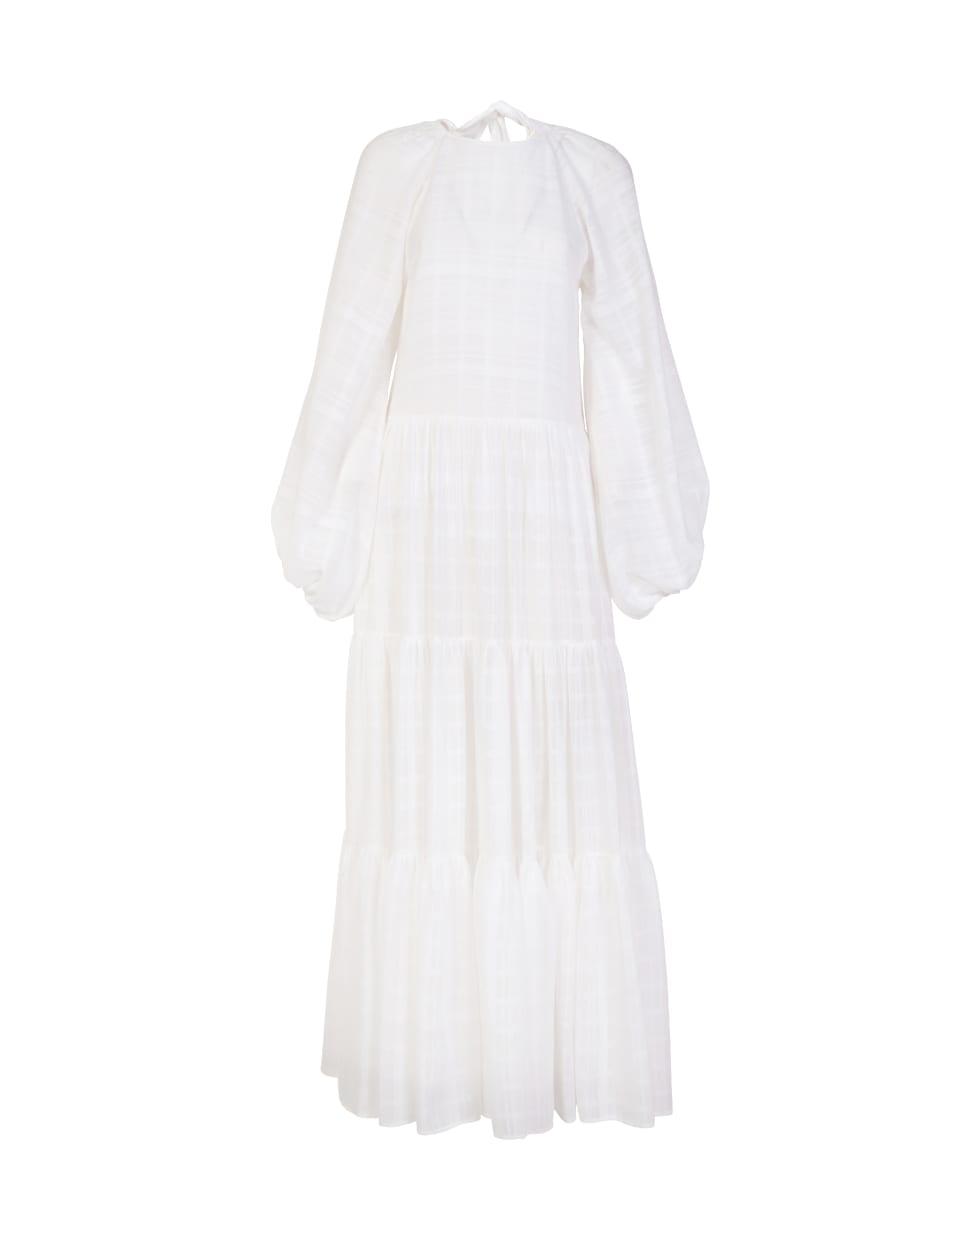 WANDERING Striped Muslin Long Dress - OFF WHITE